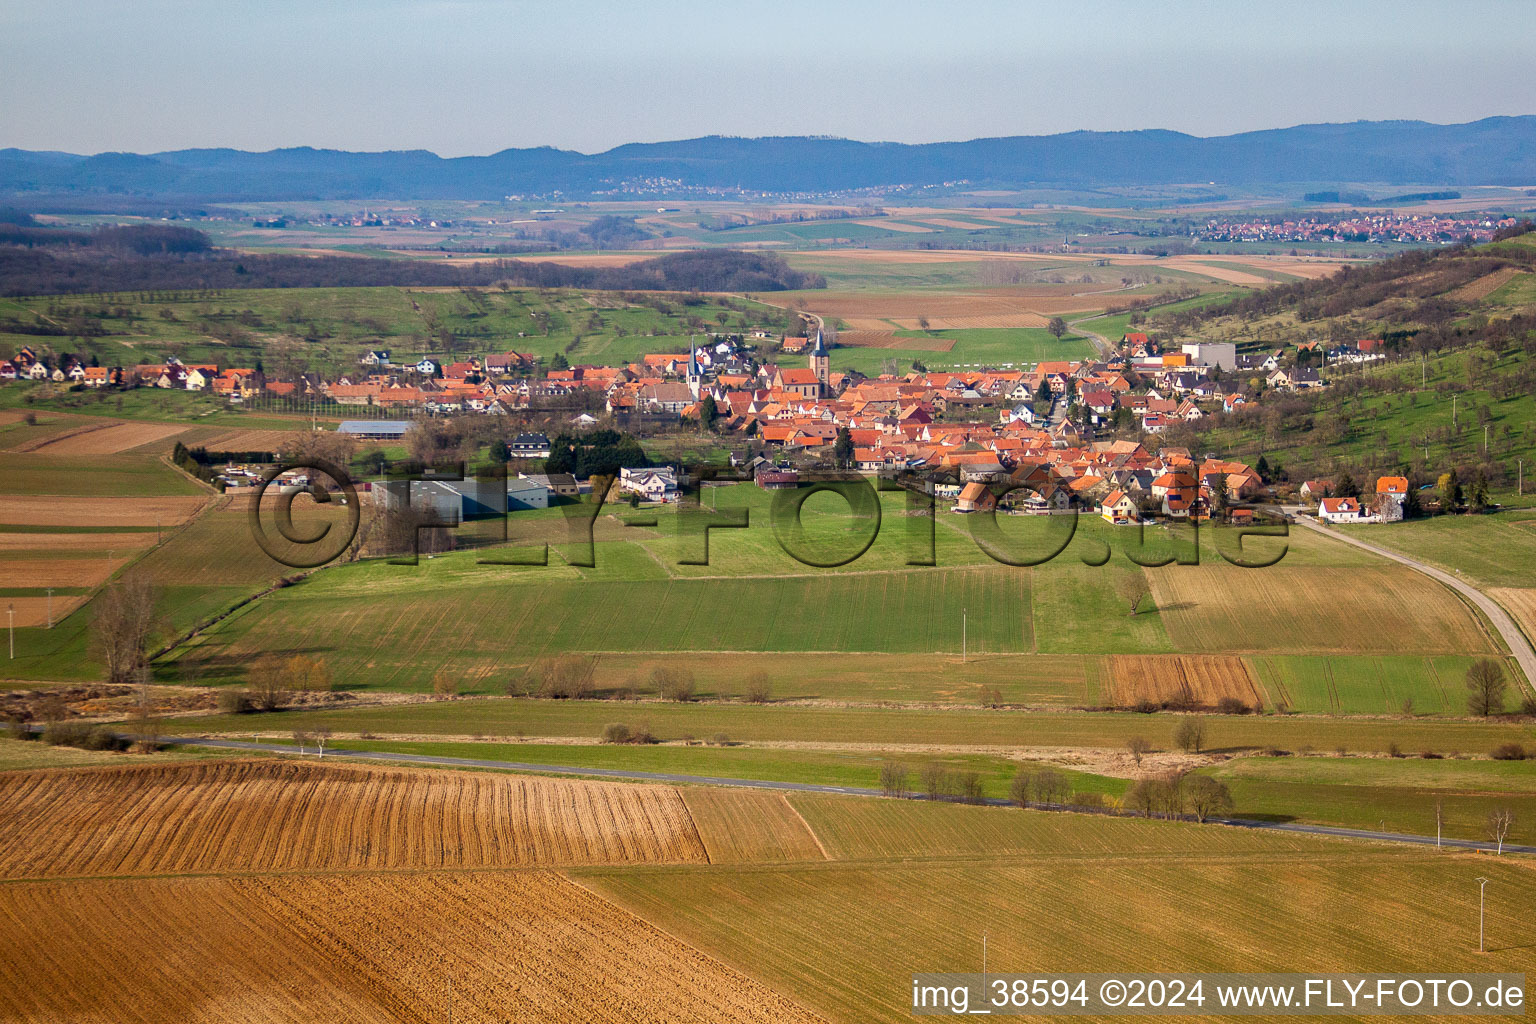 Luftbild von Dorf - Ansicht am Rande von landwirtschaftlichen Feldern und Nutzflächen in Kirrwiller in Grand Est im Bundesland Bas-Rhin, Frankreich